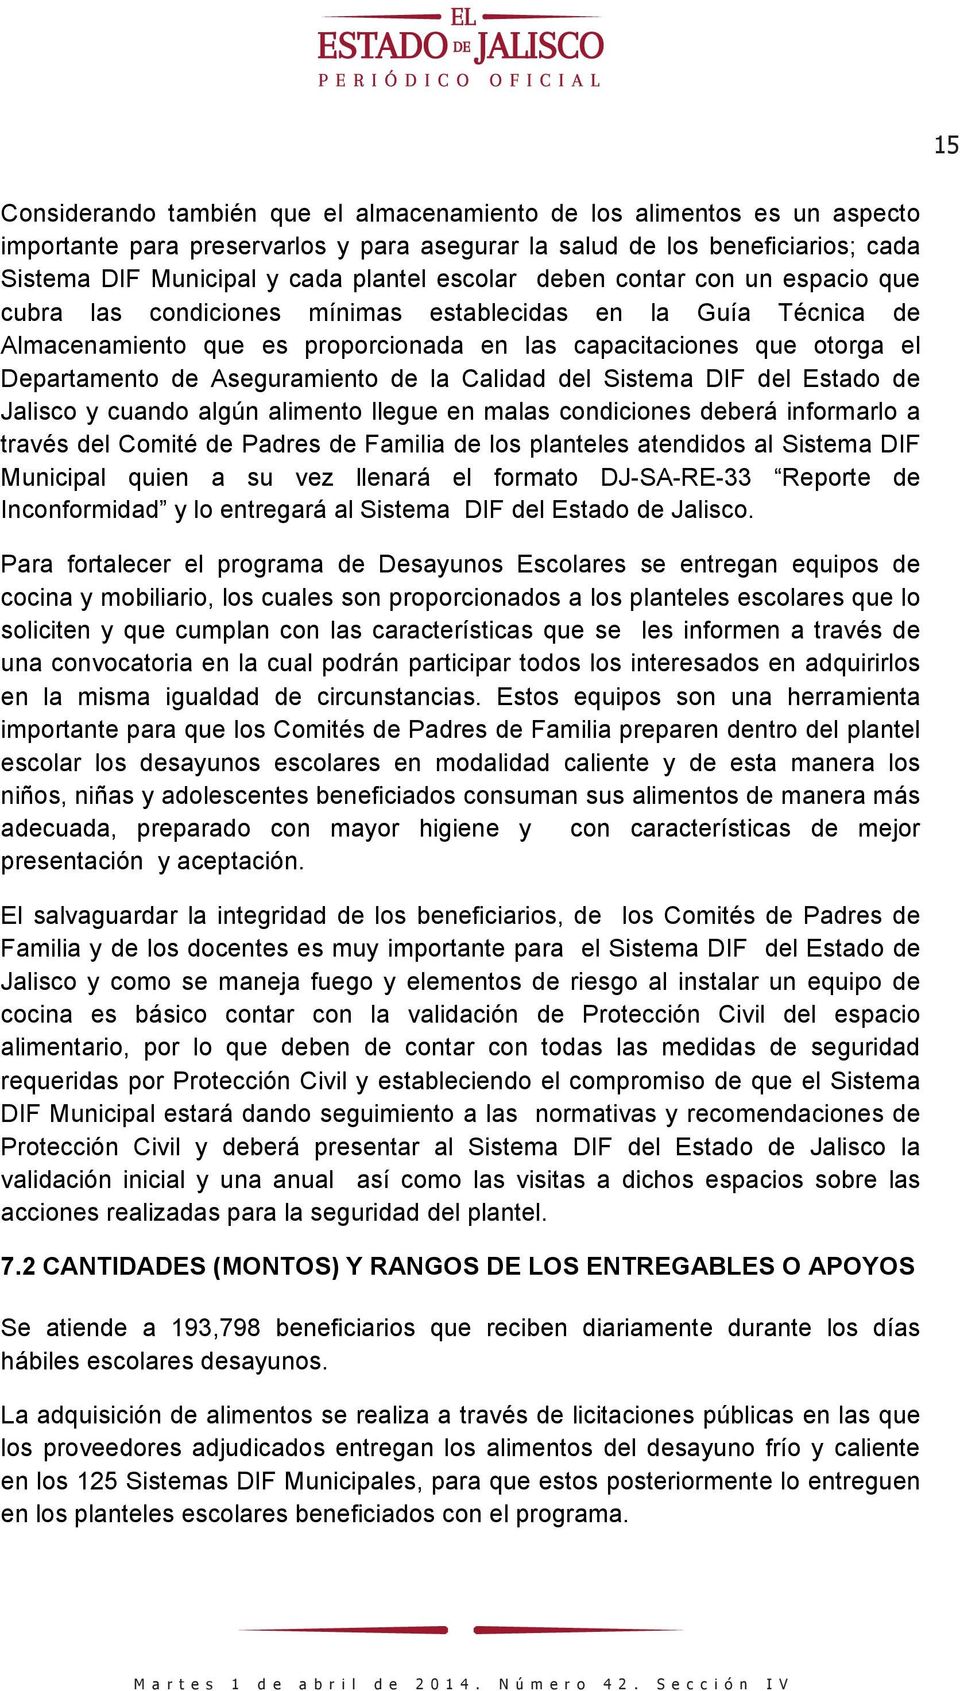 Aseguramiento de la Calidad del Sistema DIF del Estado de Jalisco y cuando algún alimento llegue en malas condiciones deberá informarlo a través del Comité de Padres de Familia de los planteles